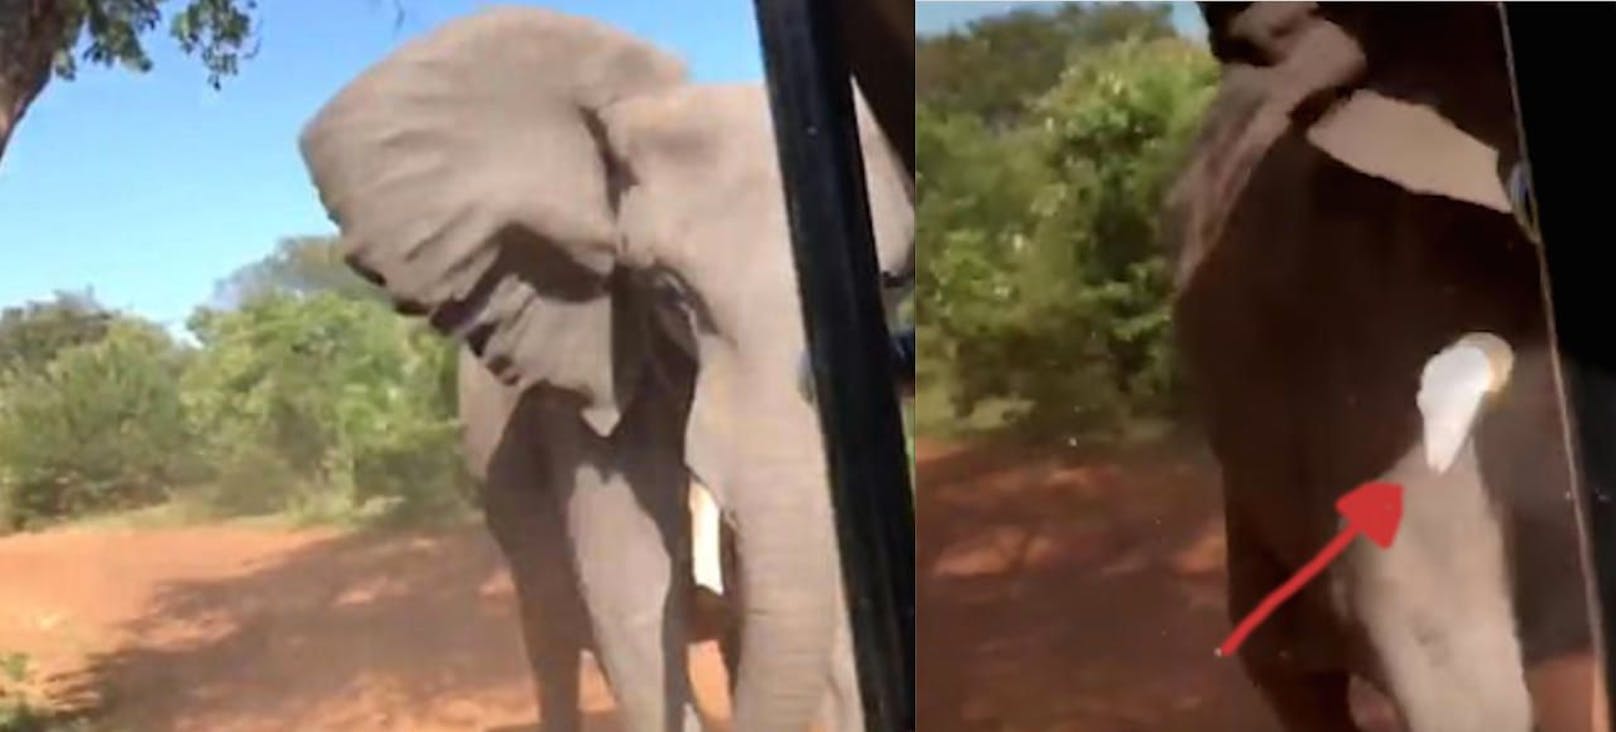 Hart: Der Elefant rammt das Auto der Urlauber mit dem Kopf, dabei bricht ein Stoßzahn (Pfeil) ab. 